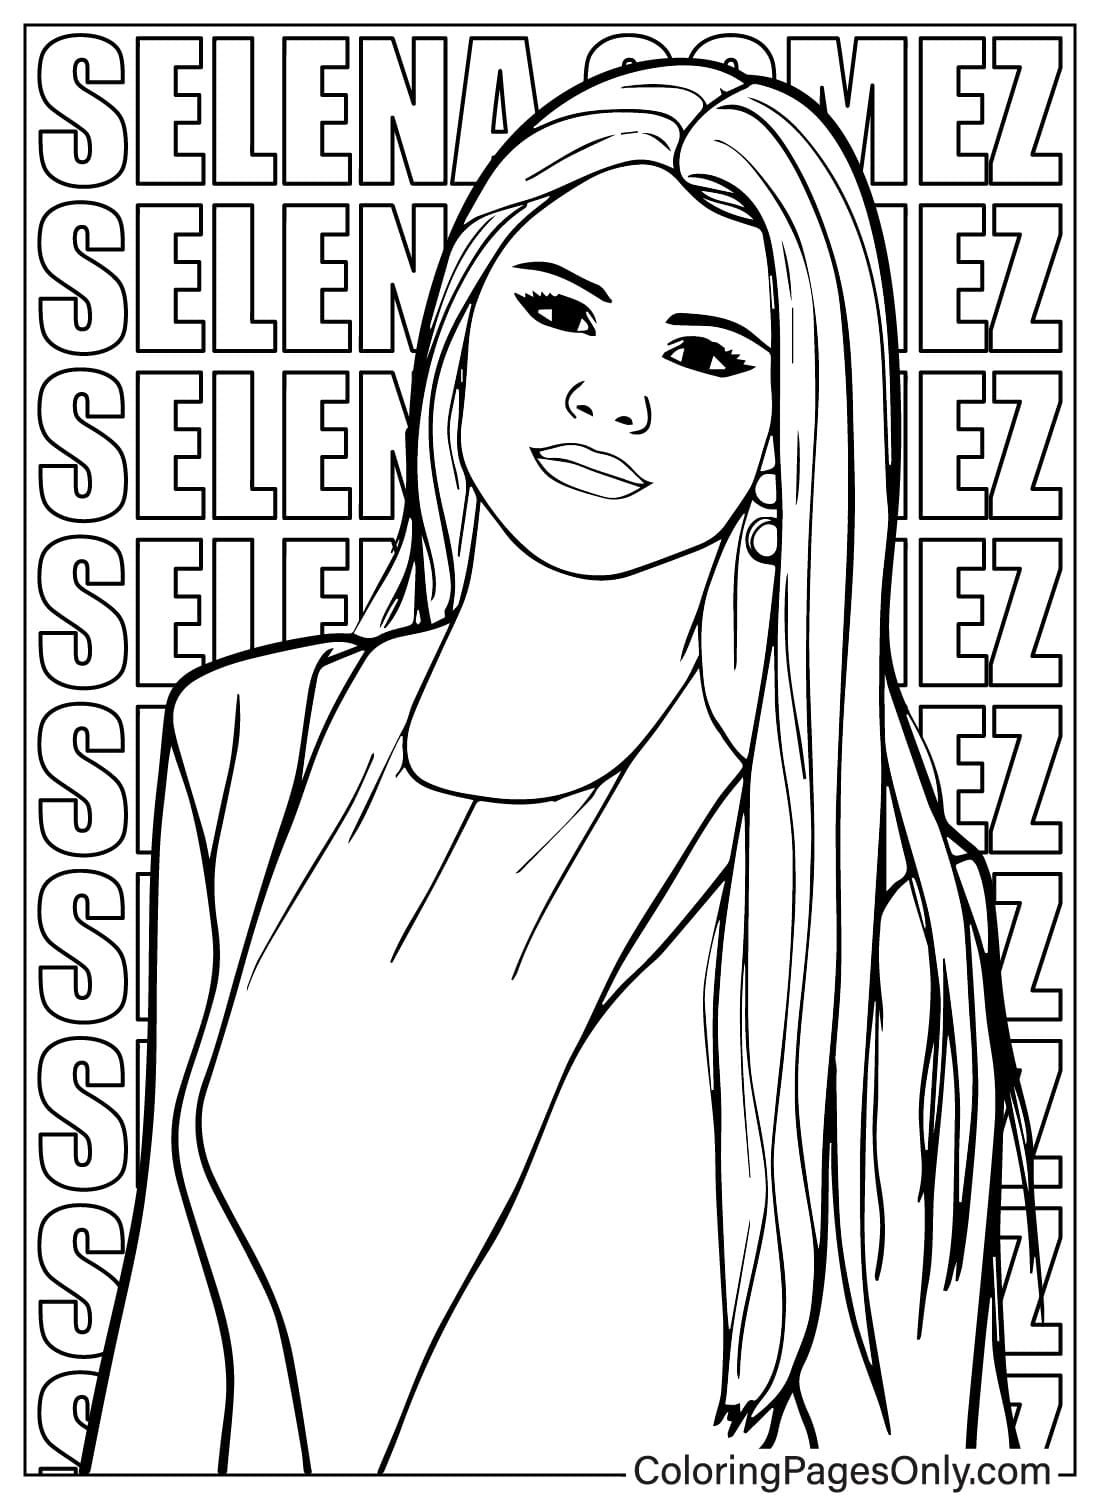 Página para colorear de Selena Gomez para imprimir de Selena Gomez